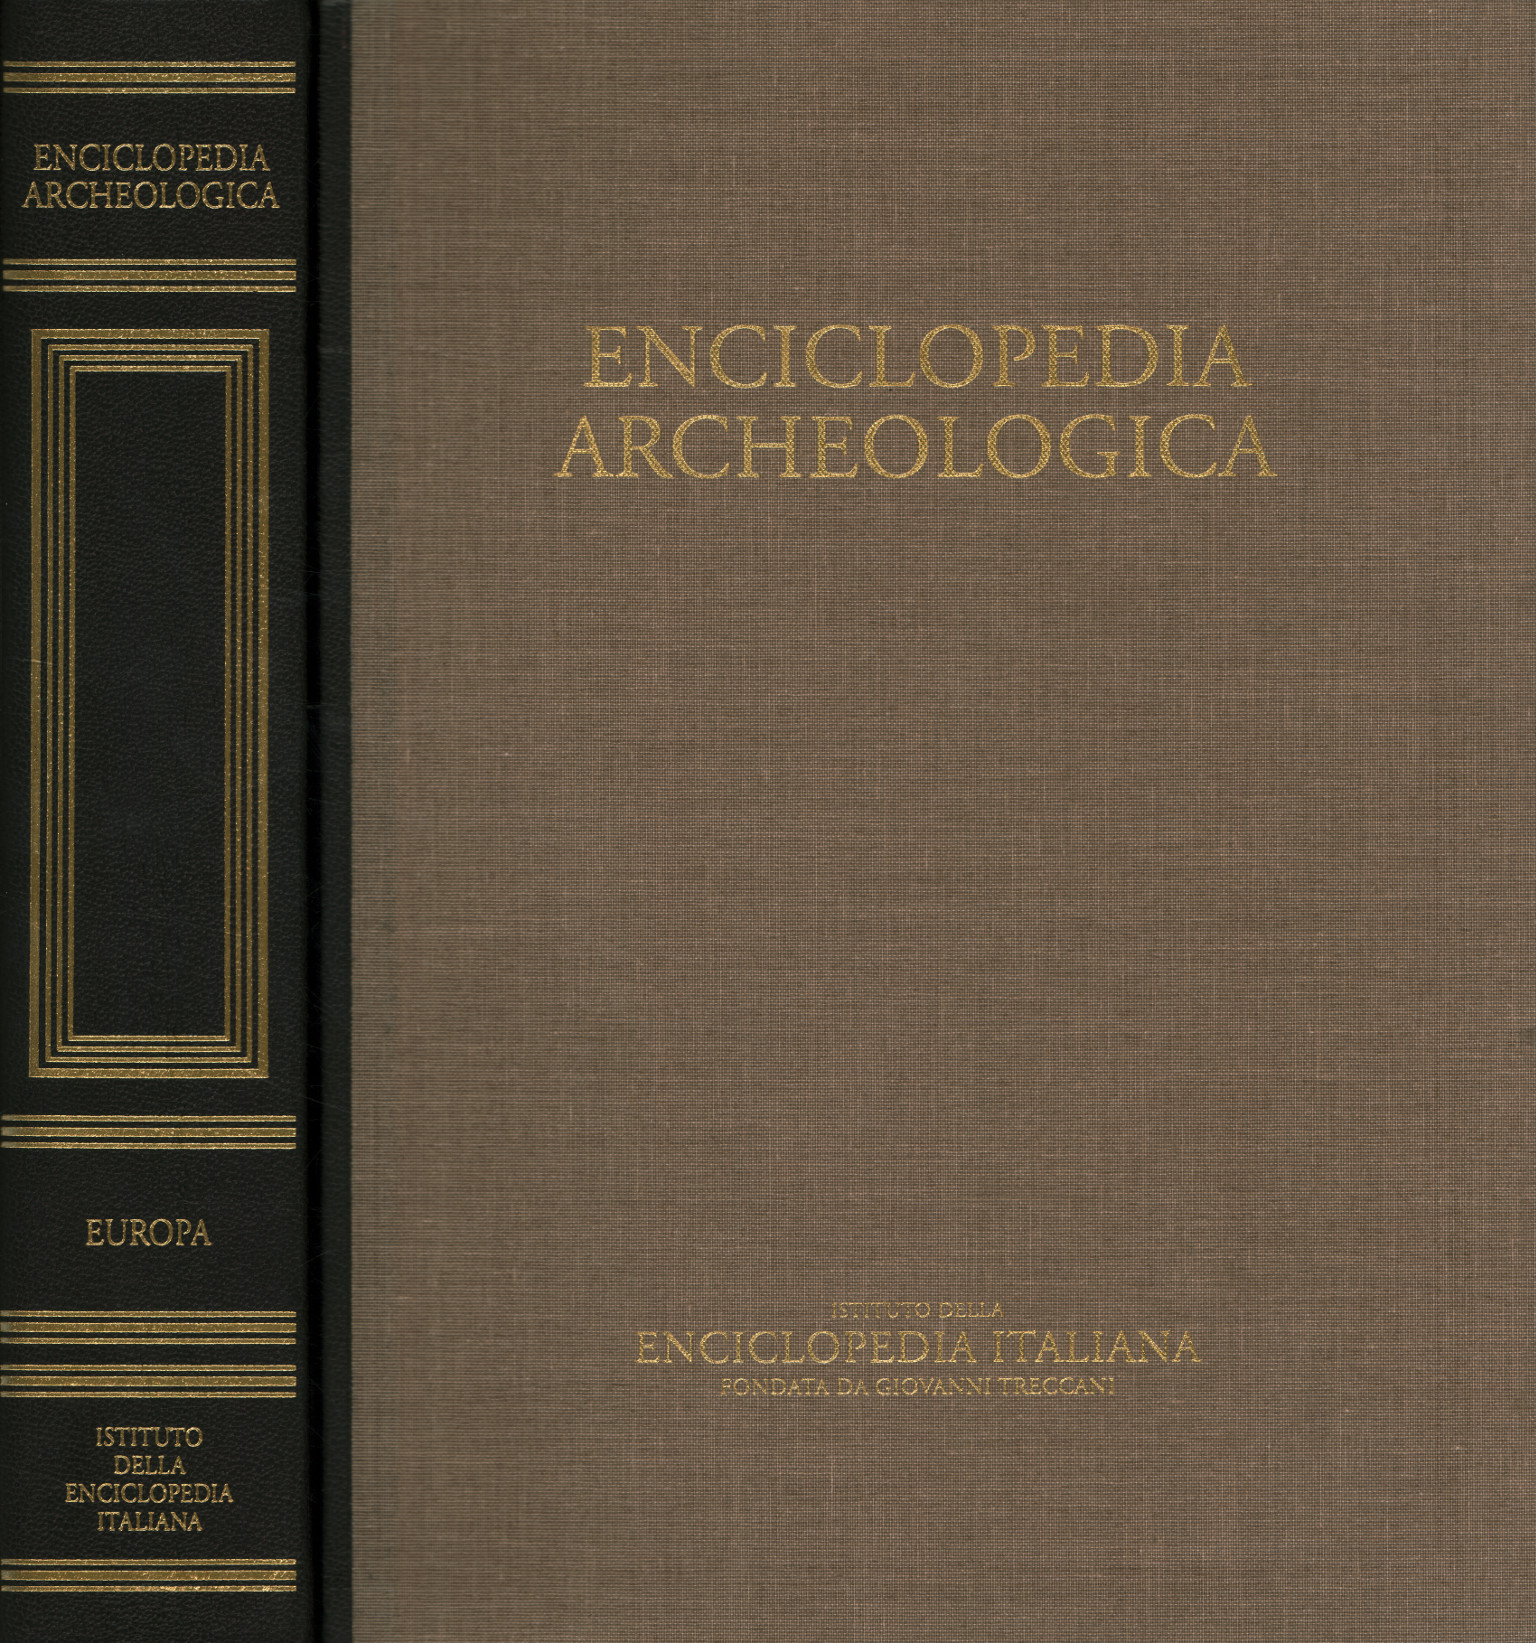 Archäologische Enzyklopädie. Europa